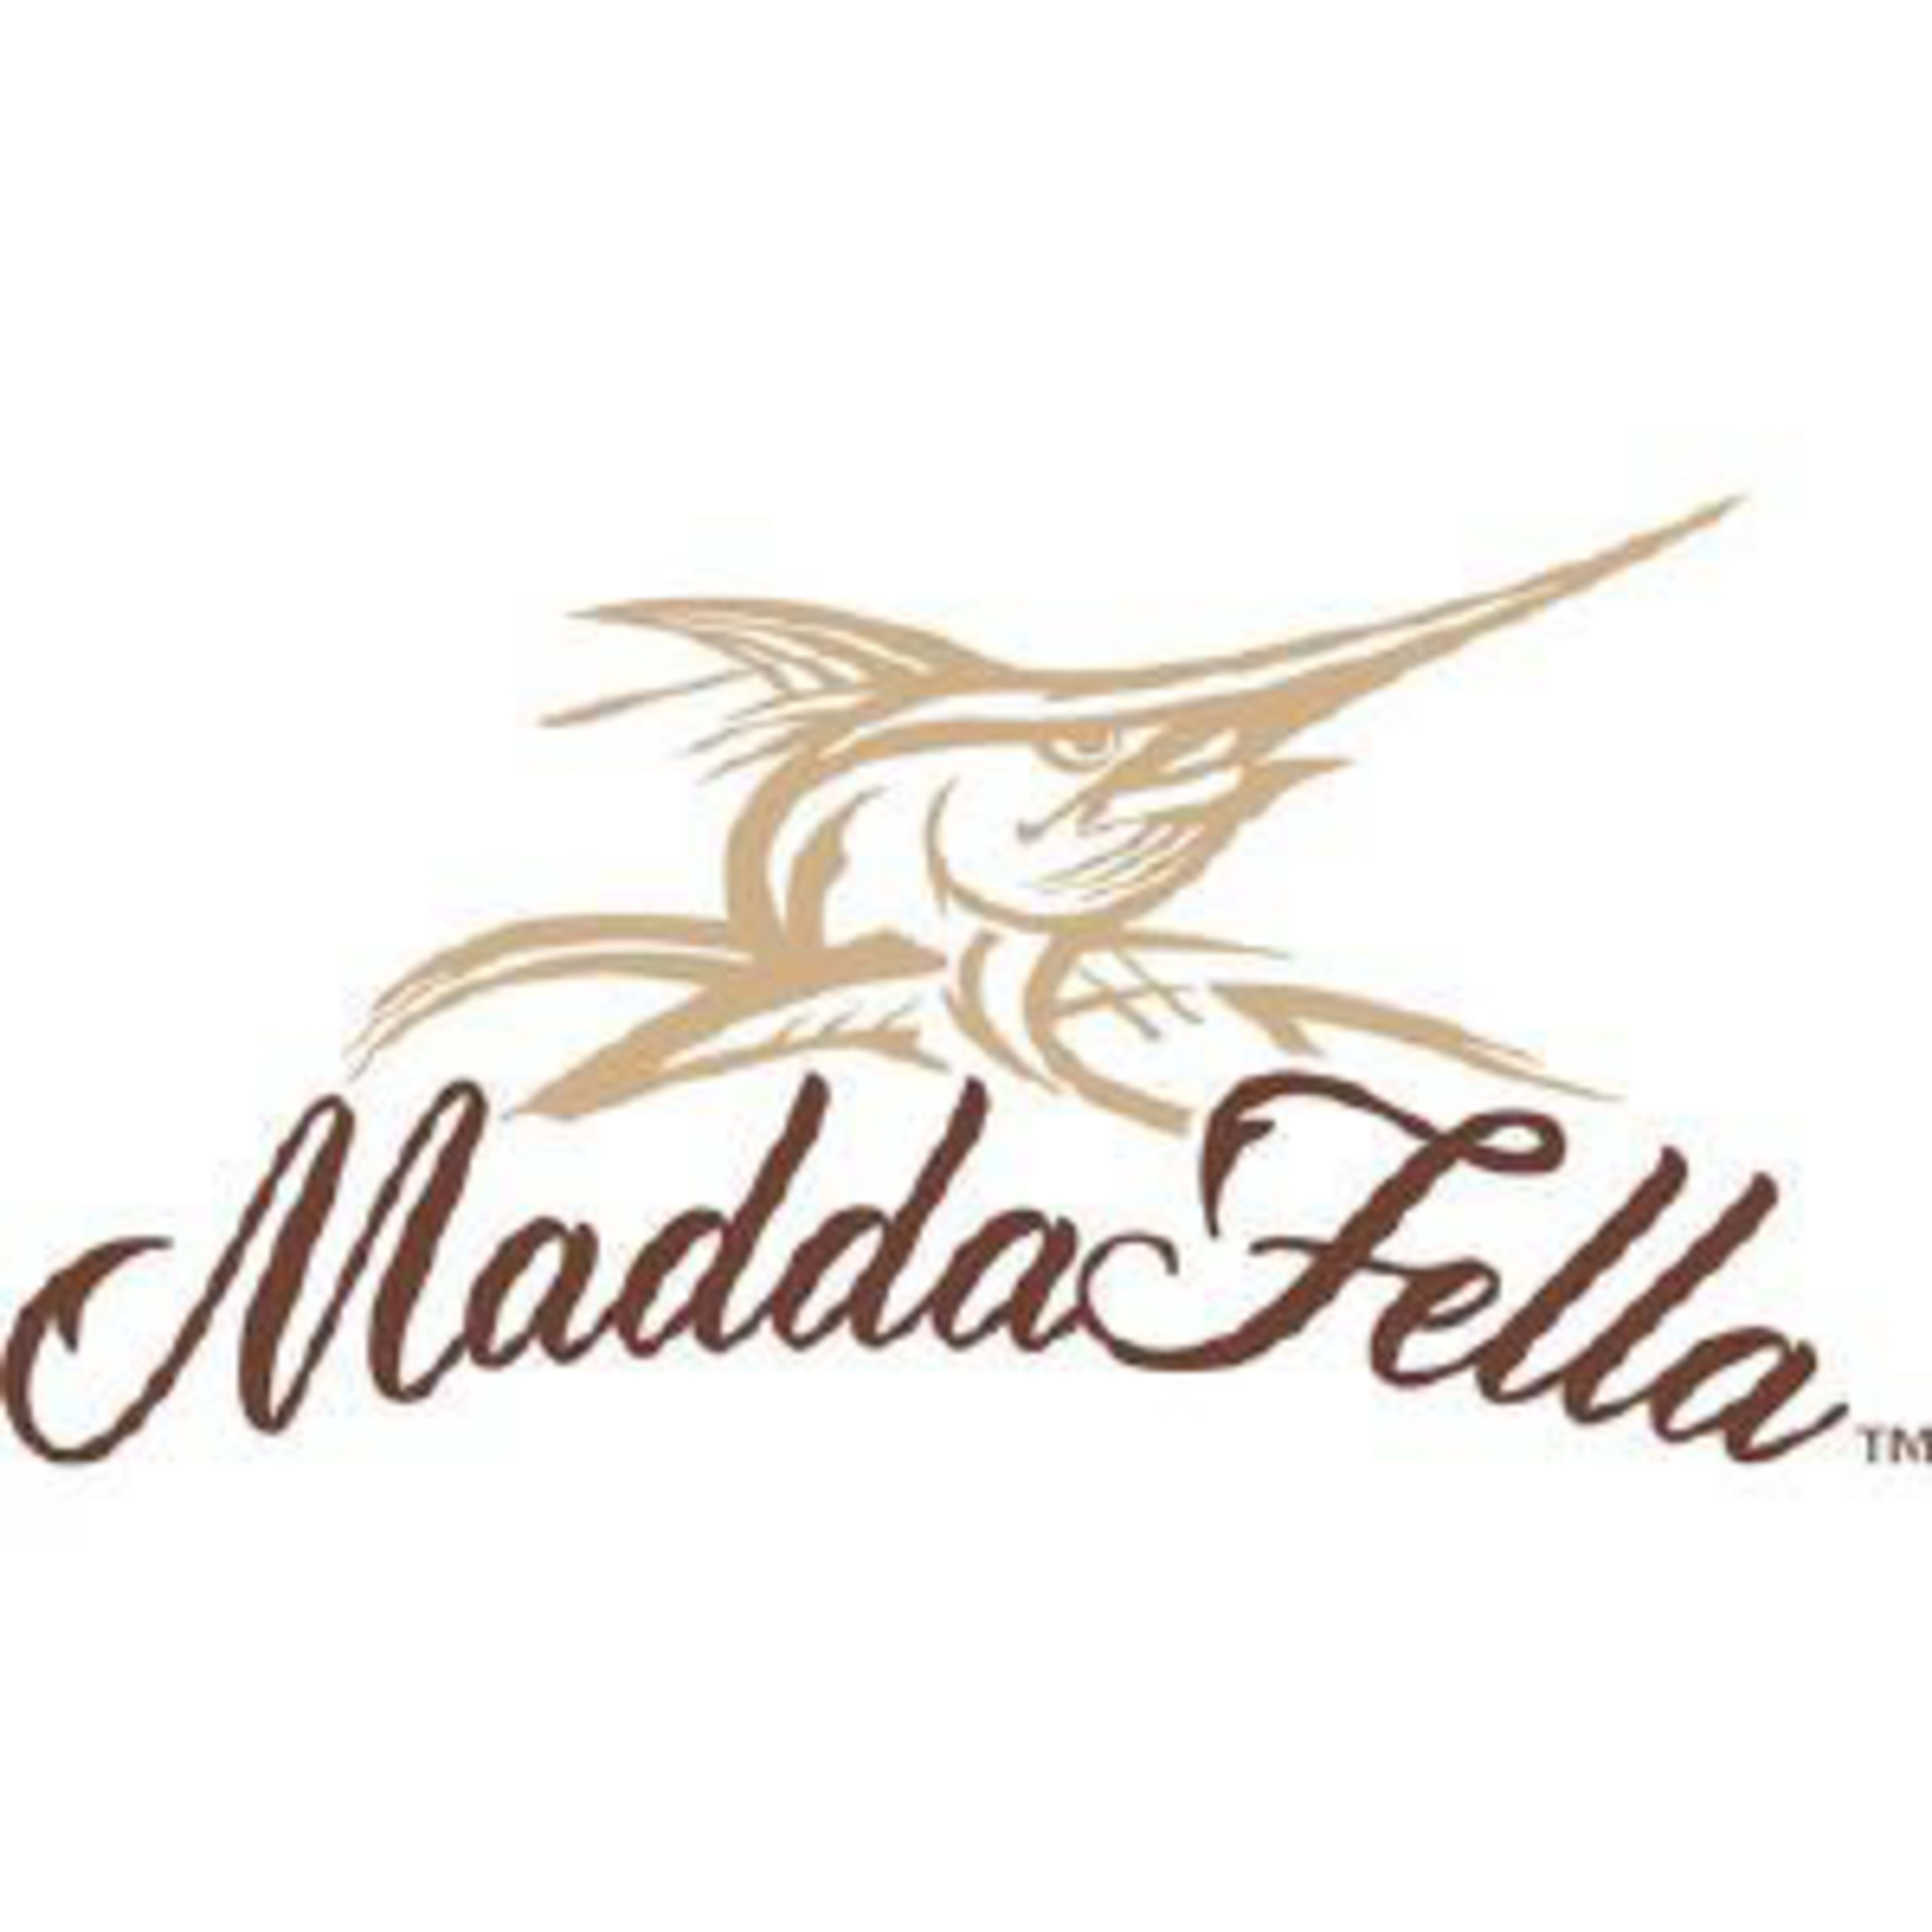 Madda Fella Code